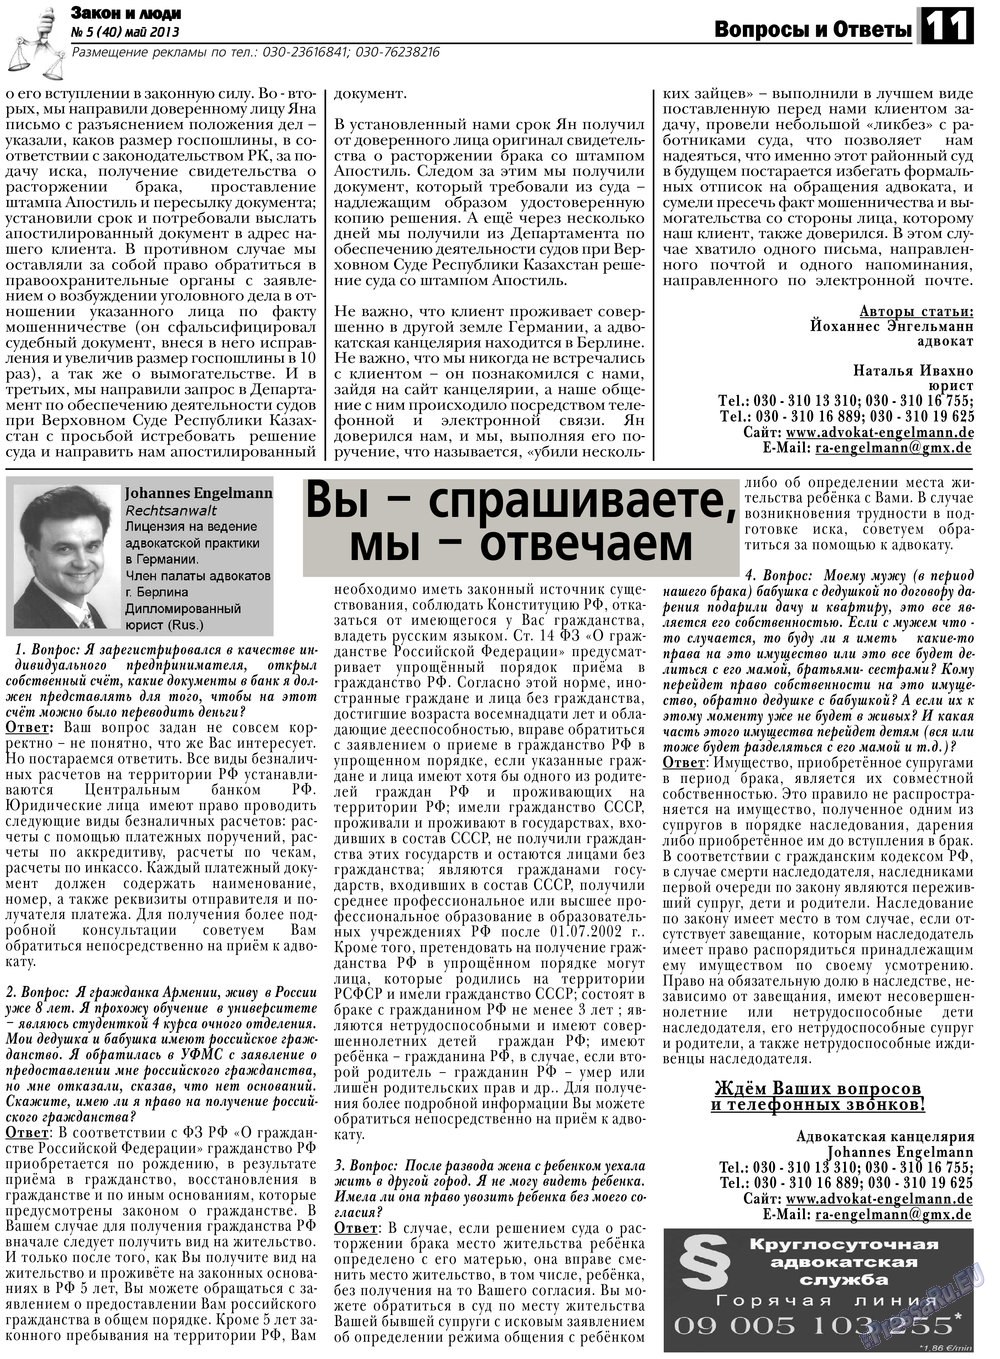 Закон и люди, газета. 2013 №5 стр.11